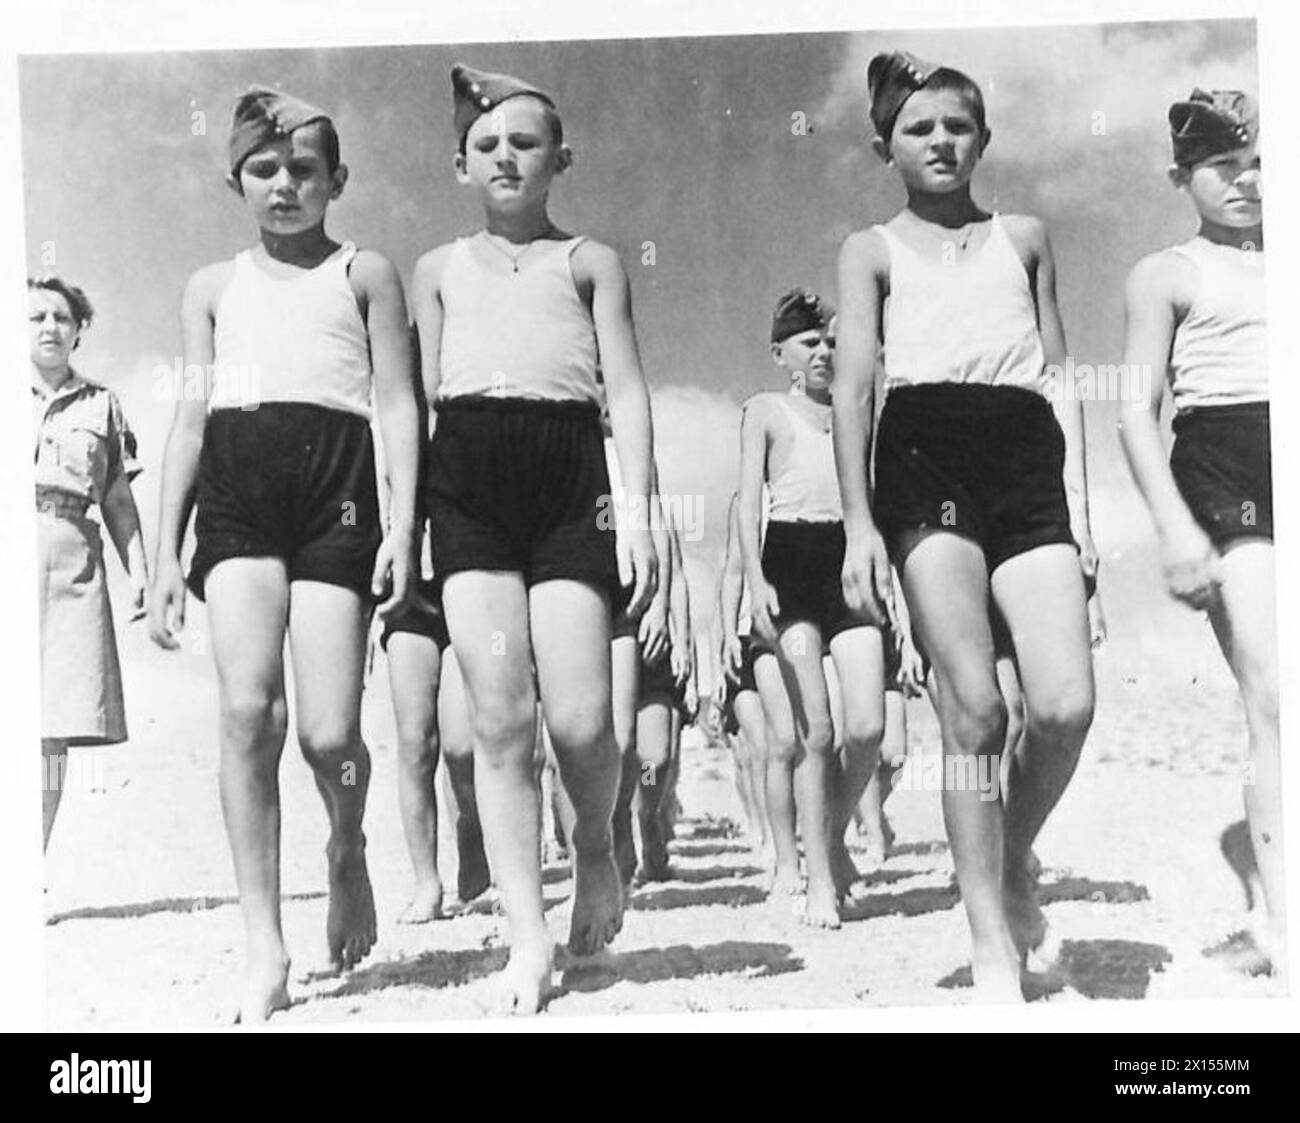 DIE POLNISCHE ARMEE IM NAHEN OSTEN, 1942-1943 - Eine Einheit von Jungen, die barfuß während einer Parade marschieren. Bewegung und frische Luft wirkten mit ihrem Körper Wunder und ermöglichten es ihnen, sich vollständig von den Not und dem Hunger des sowjetischen Gulag zu erholen. Nach der deutsch-sowjetischen Invasion Polens wurden viele Polen in verschiedene Lager im sowjetischen Gulag deportiert. Unter ihnen waren viele Jungen jeden Alters. Nach der Unterzeichnung des Sikorski-Mayski-Abkommens 1941 wurden viele Überlebende - Männer, Frauen, Kinder - freigelassen und über Persien aus der Sowjetunion nach Palästina evakuiert Stockfoto